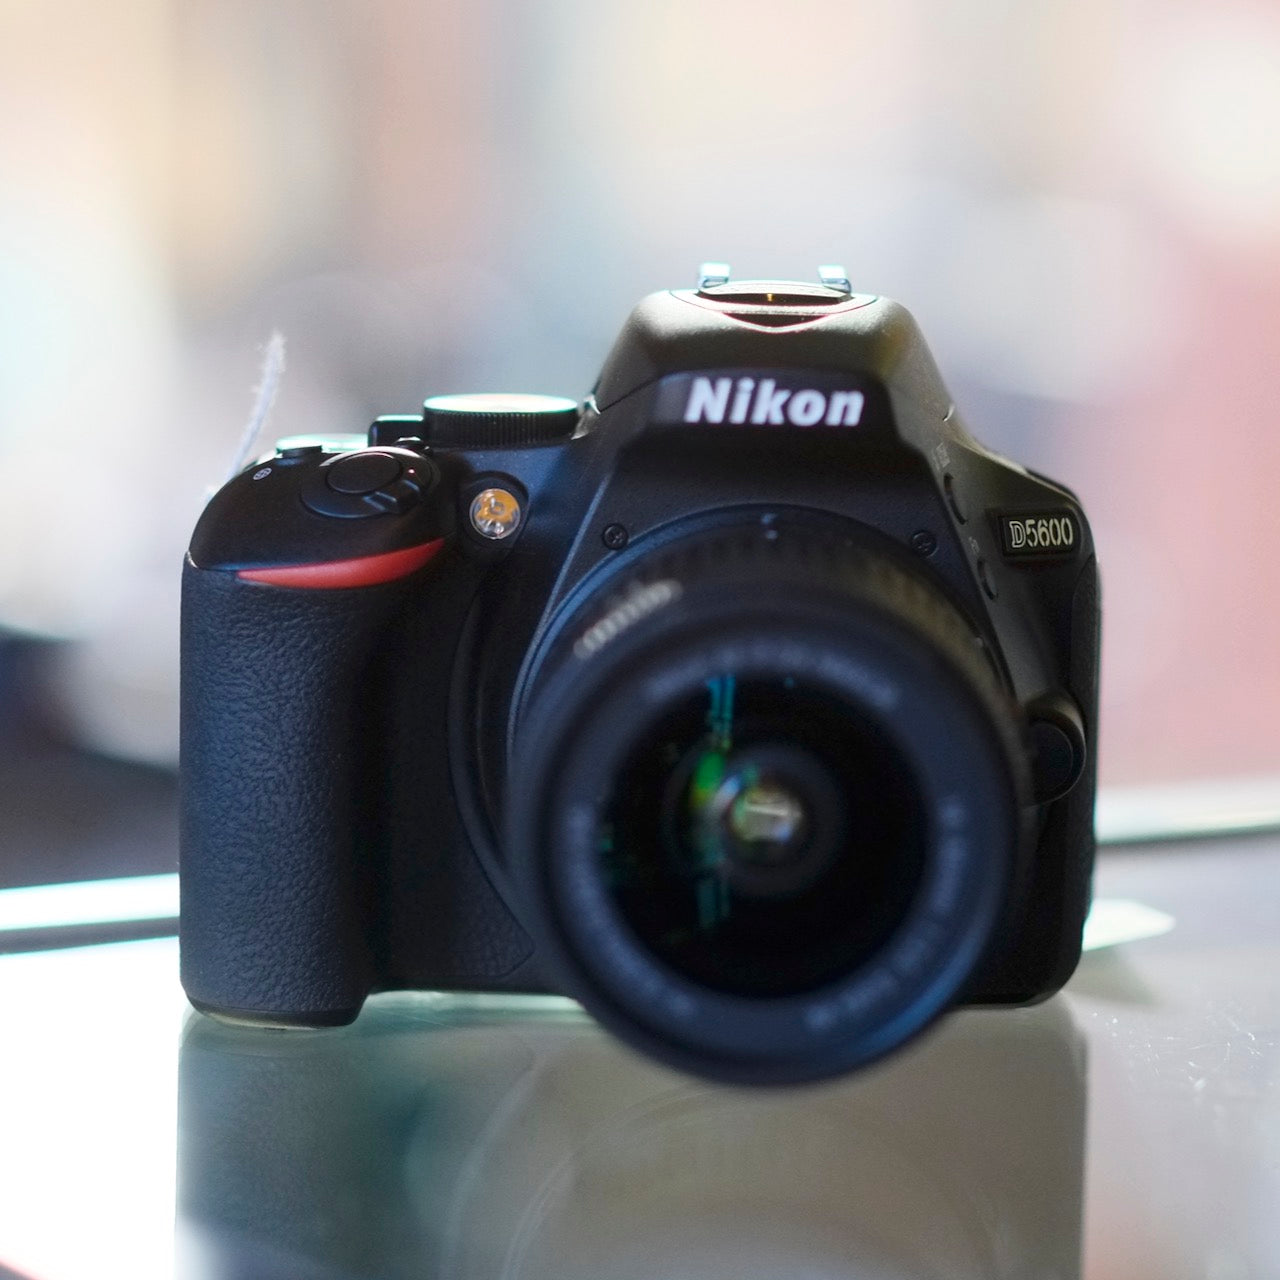 Nikon D5600 with 18-55mm f3.5-5.6G AF-P Nikkor